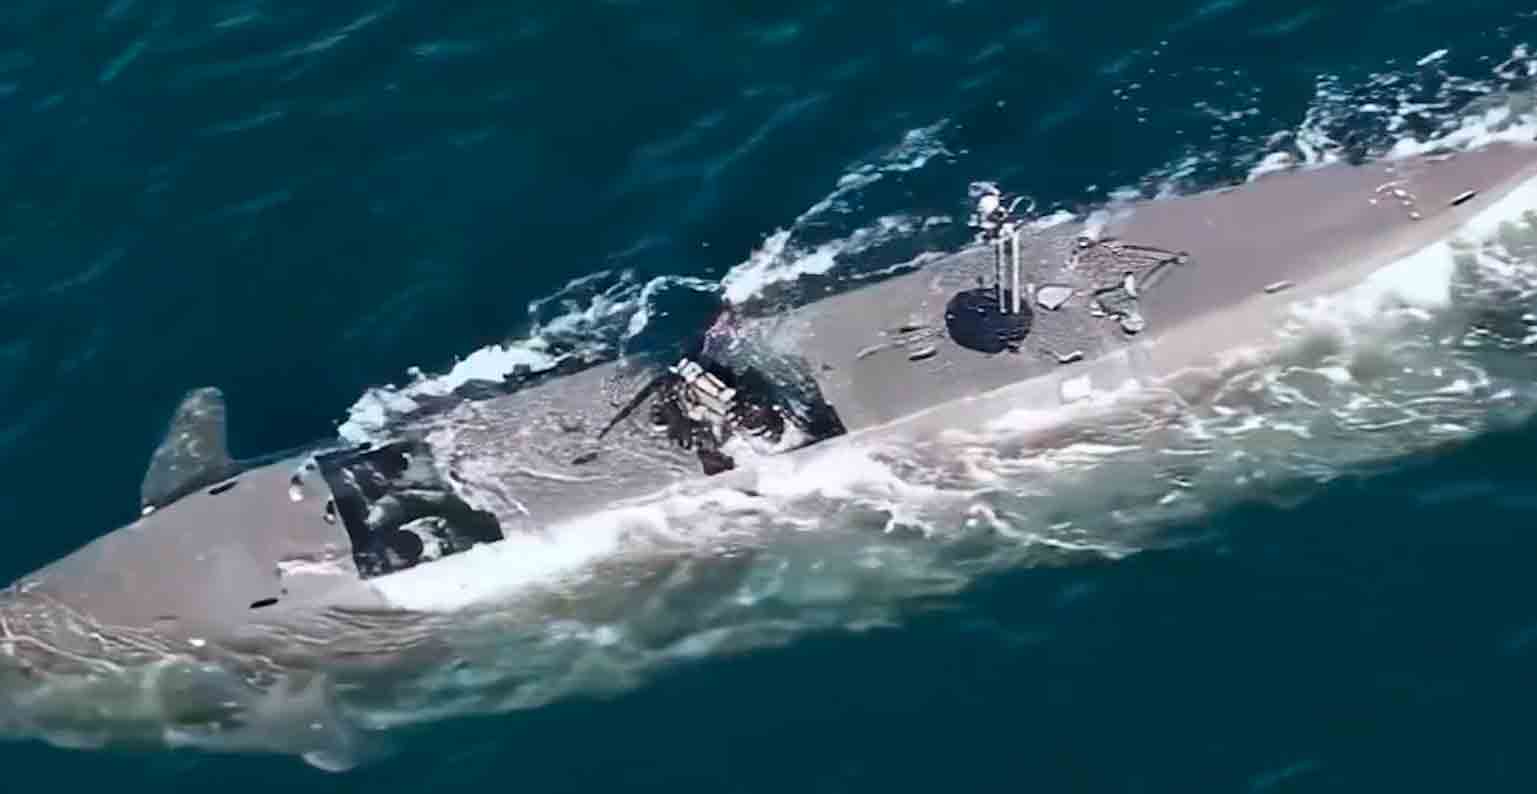 Film szwedzkiej armii pokazuje łódź sił specjalnych, która może działać jak łódź podwodna